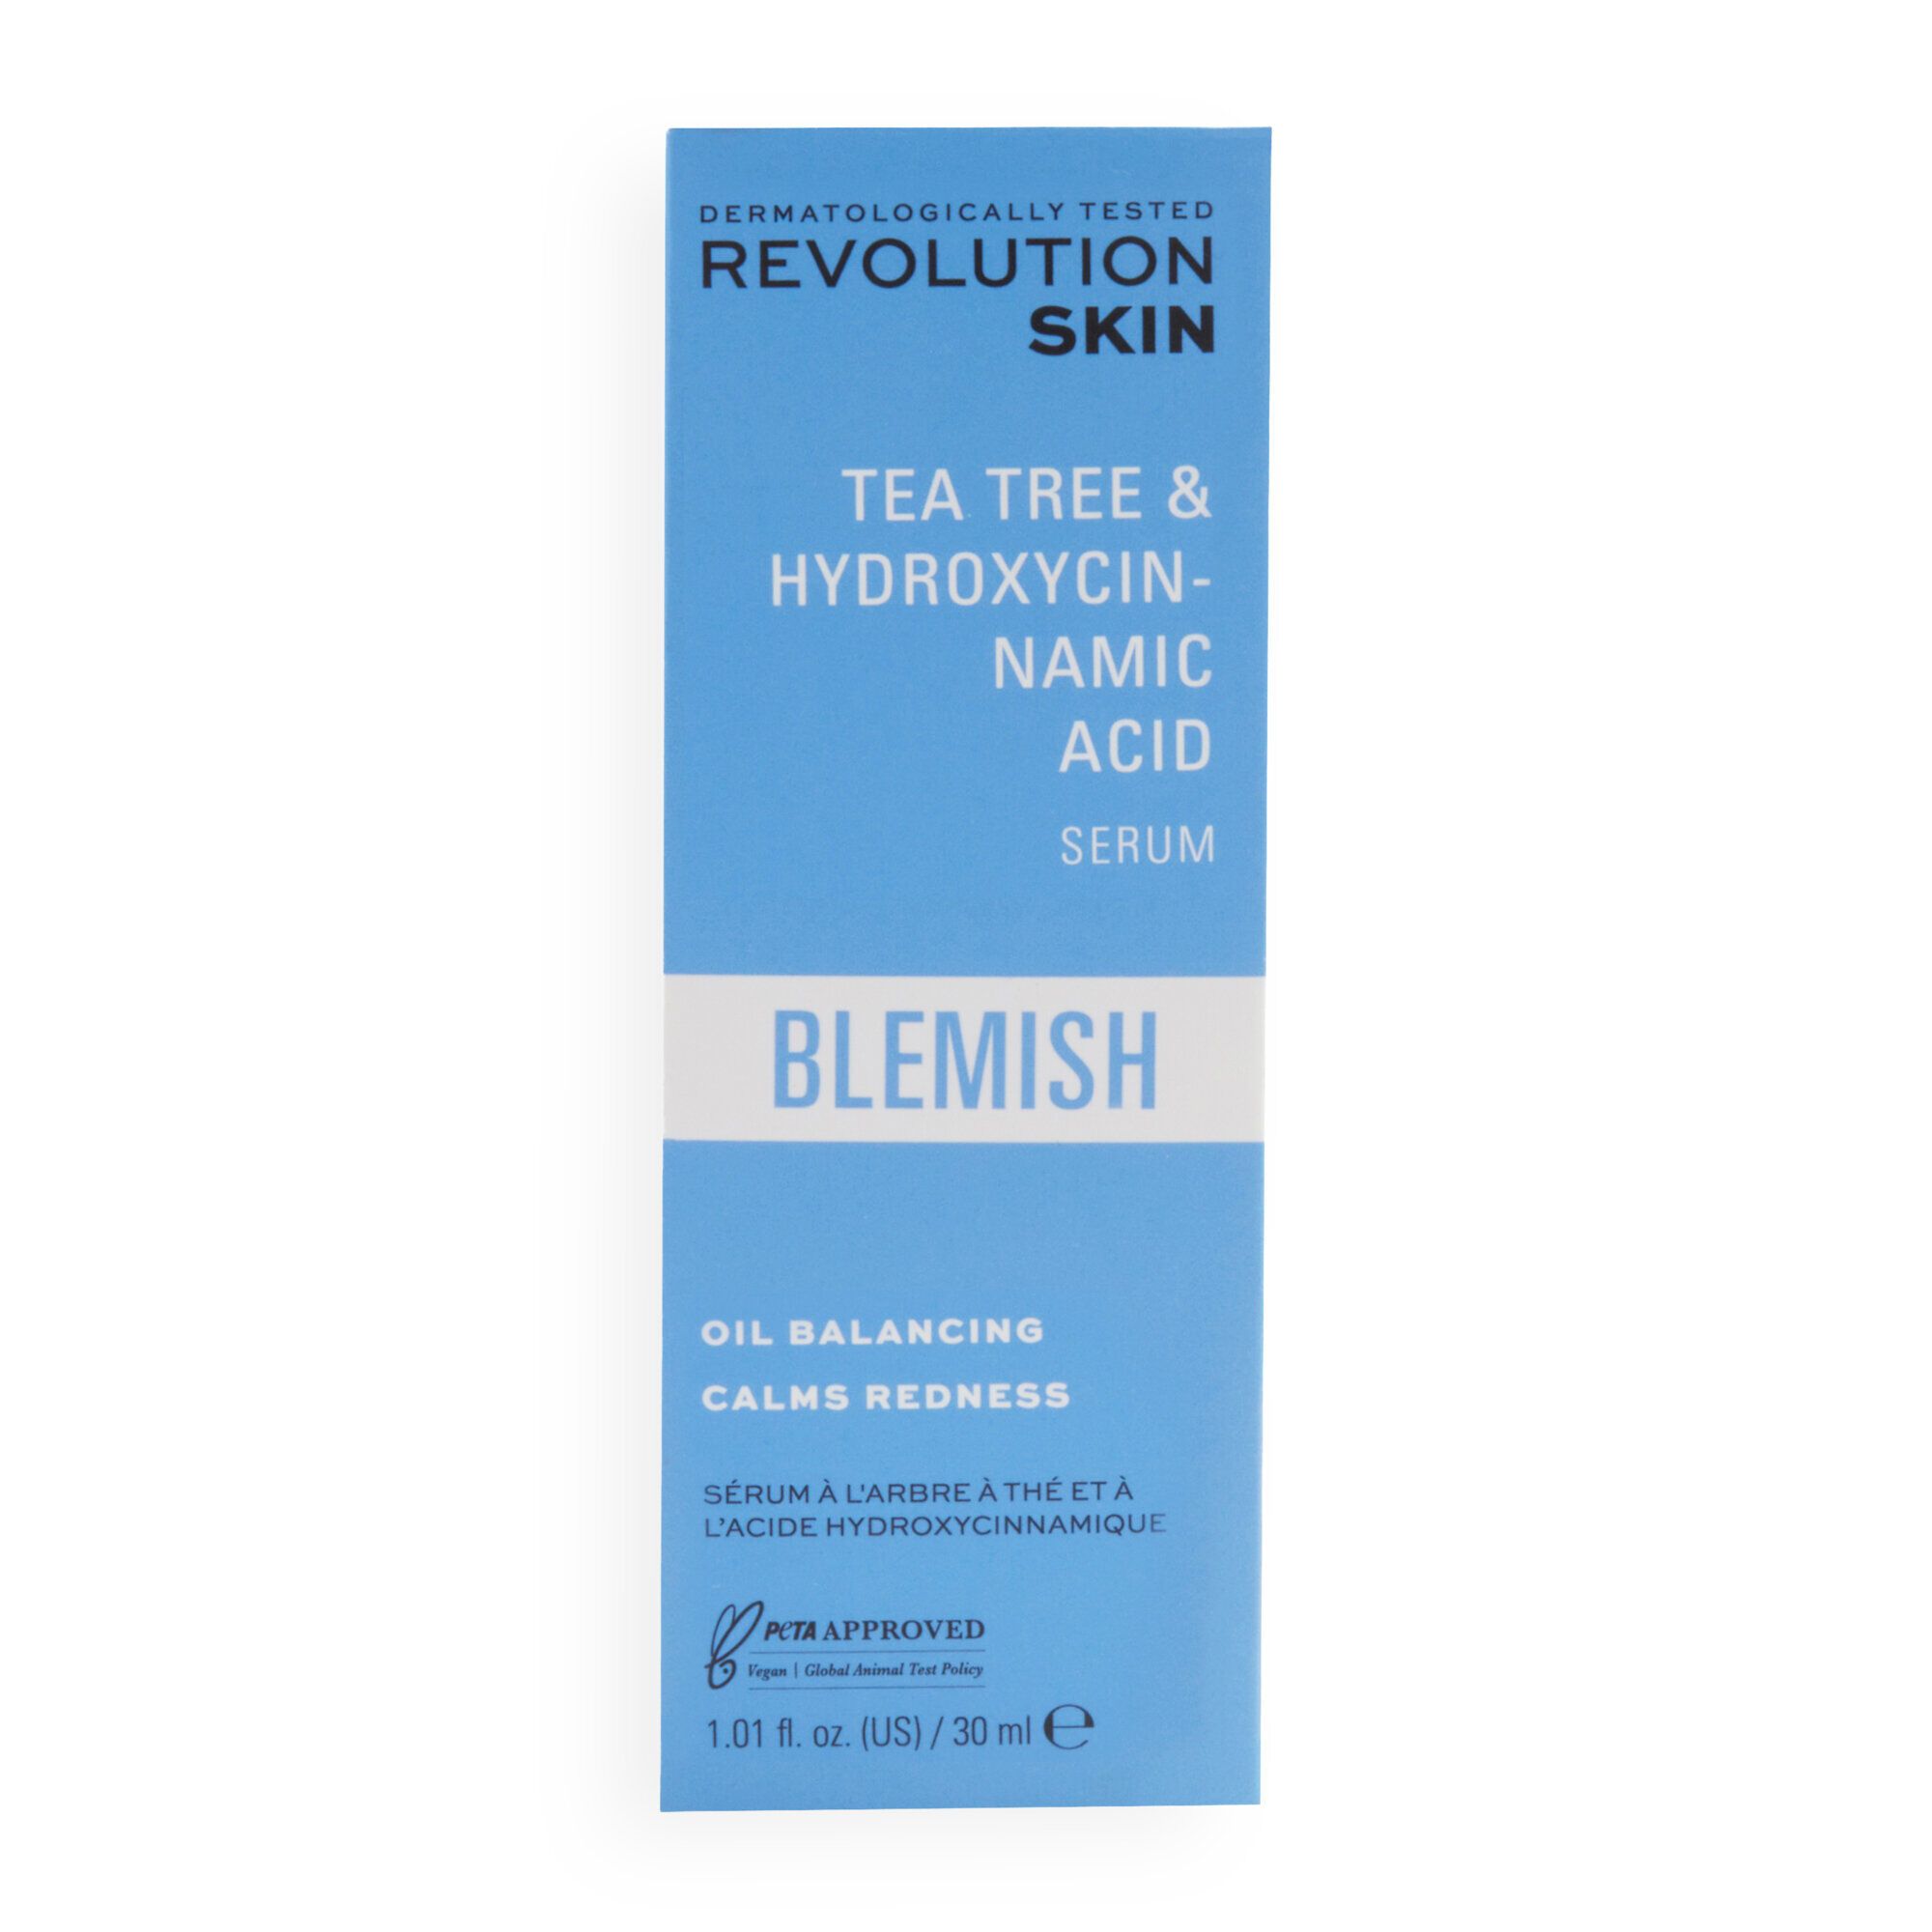 Gesichtsserum - Blemish Tea Tree & Hydroxycinnamic Acid Serum